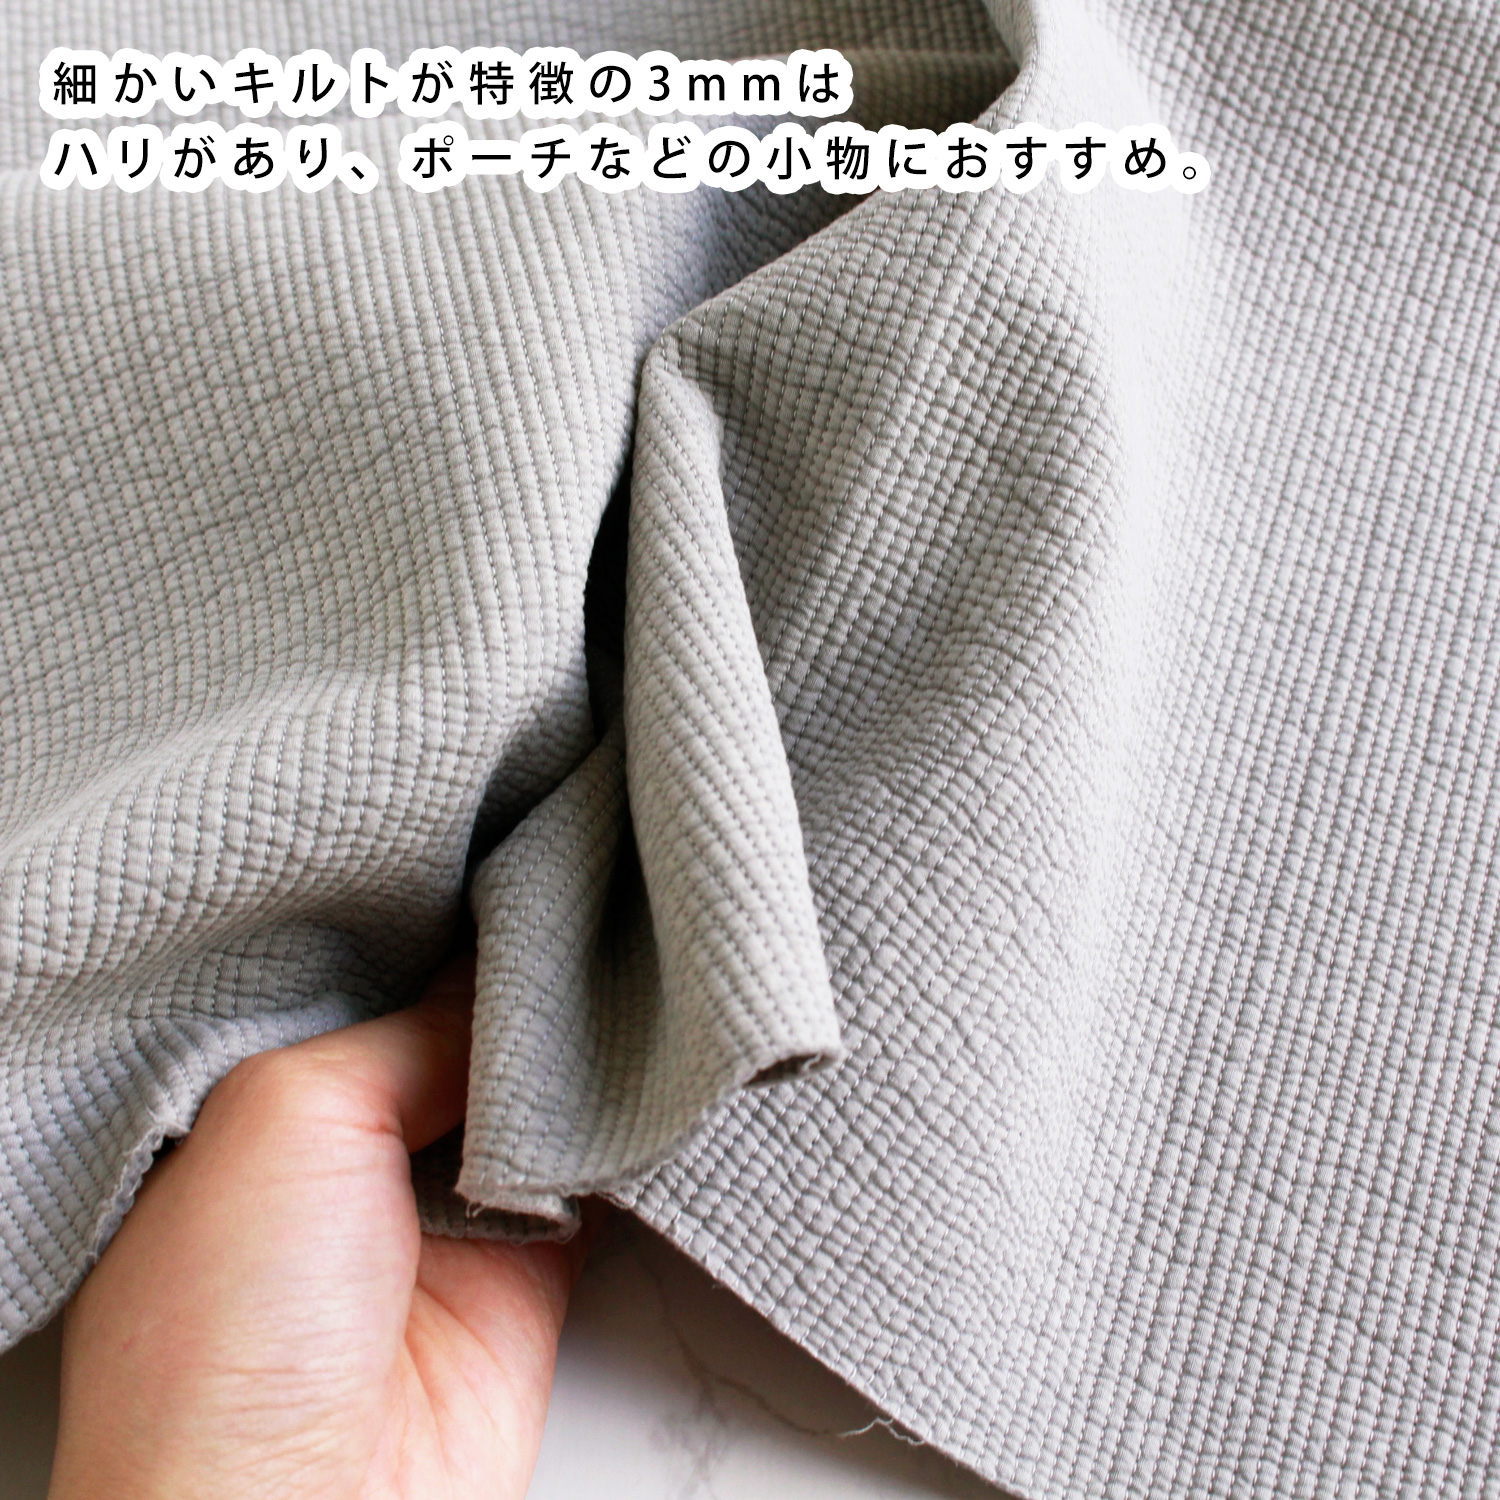 ■NBY303R nubi ヌビ 韓国伝統キルティング生地 巾3mmサイズ 原反約8m乱巻 (巻) 6